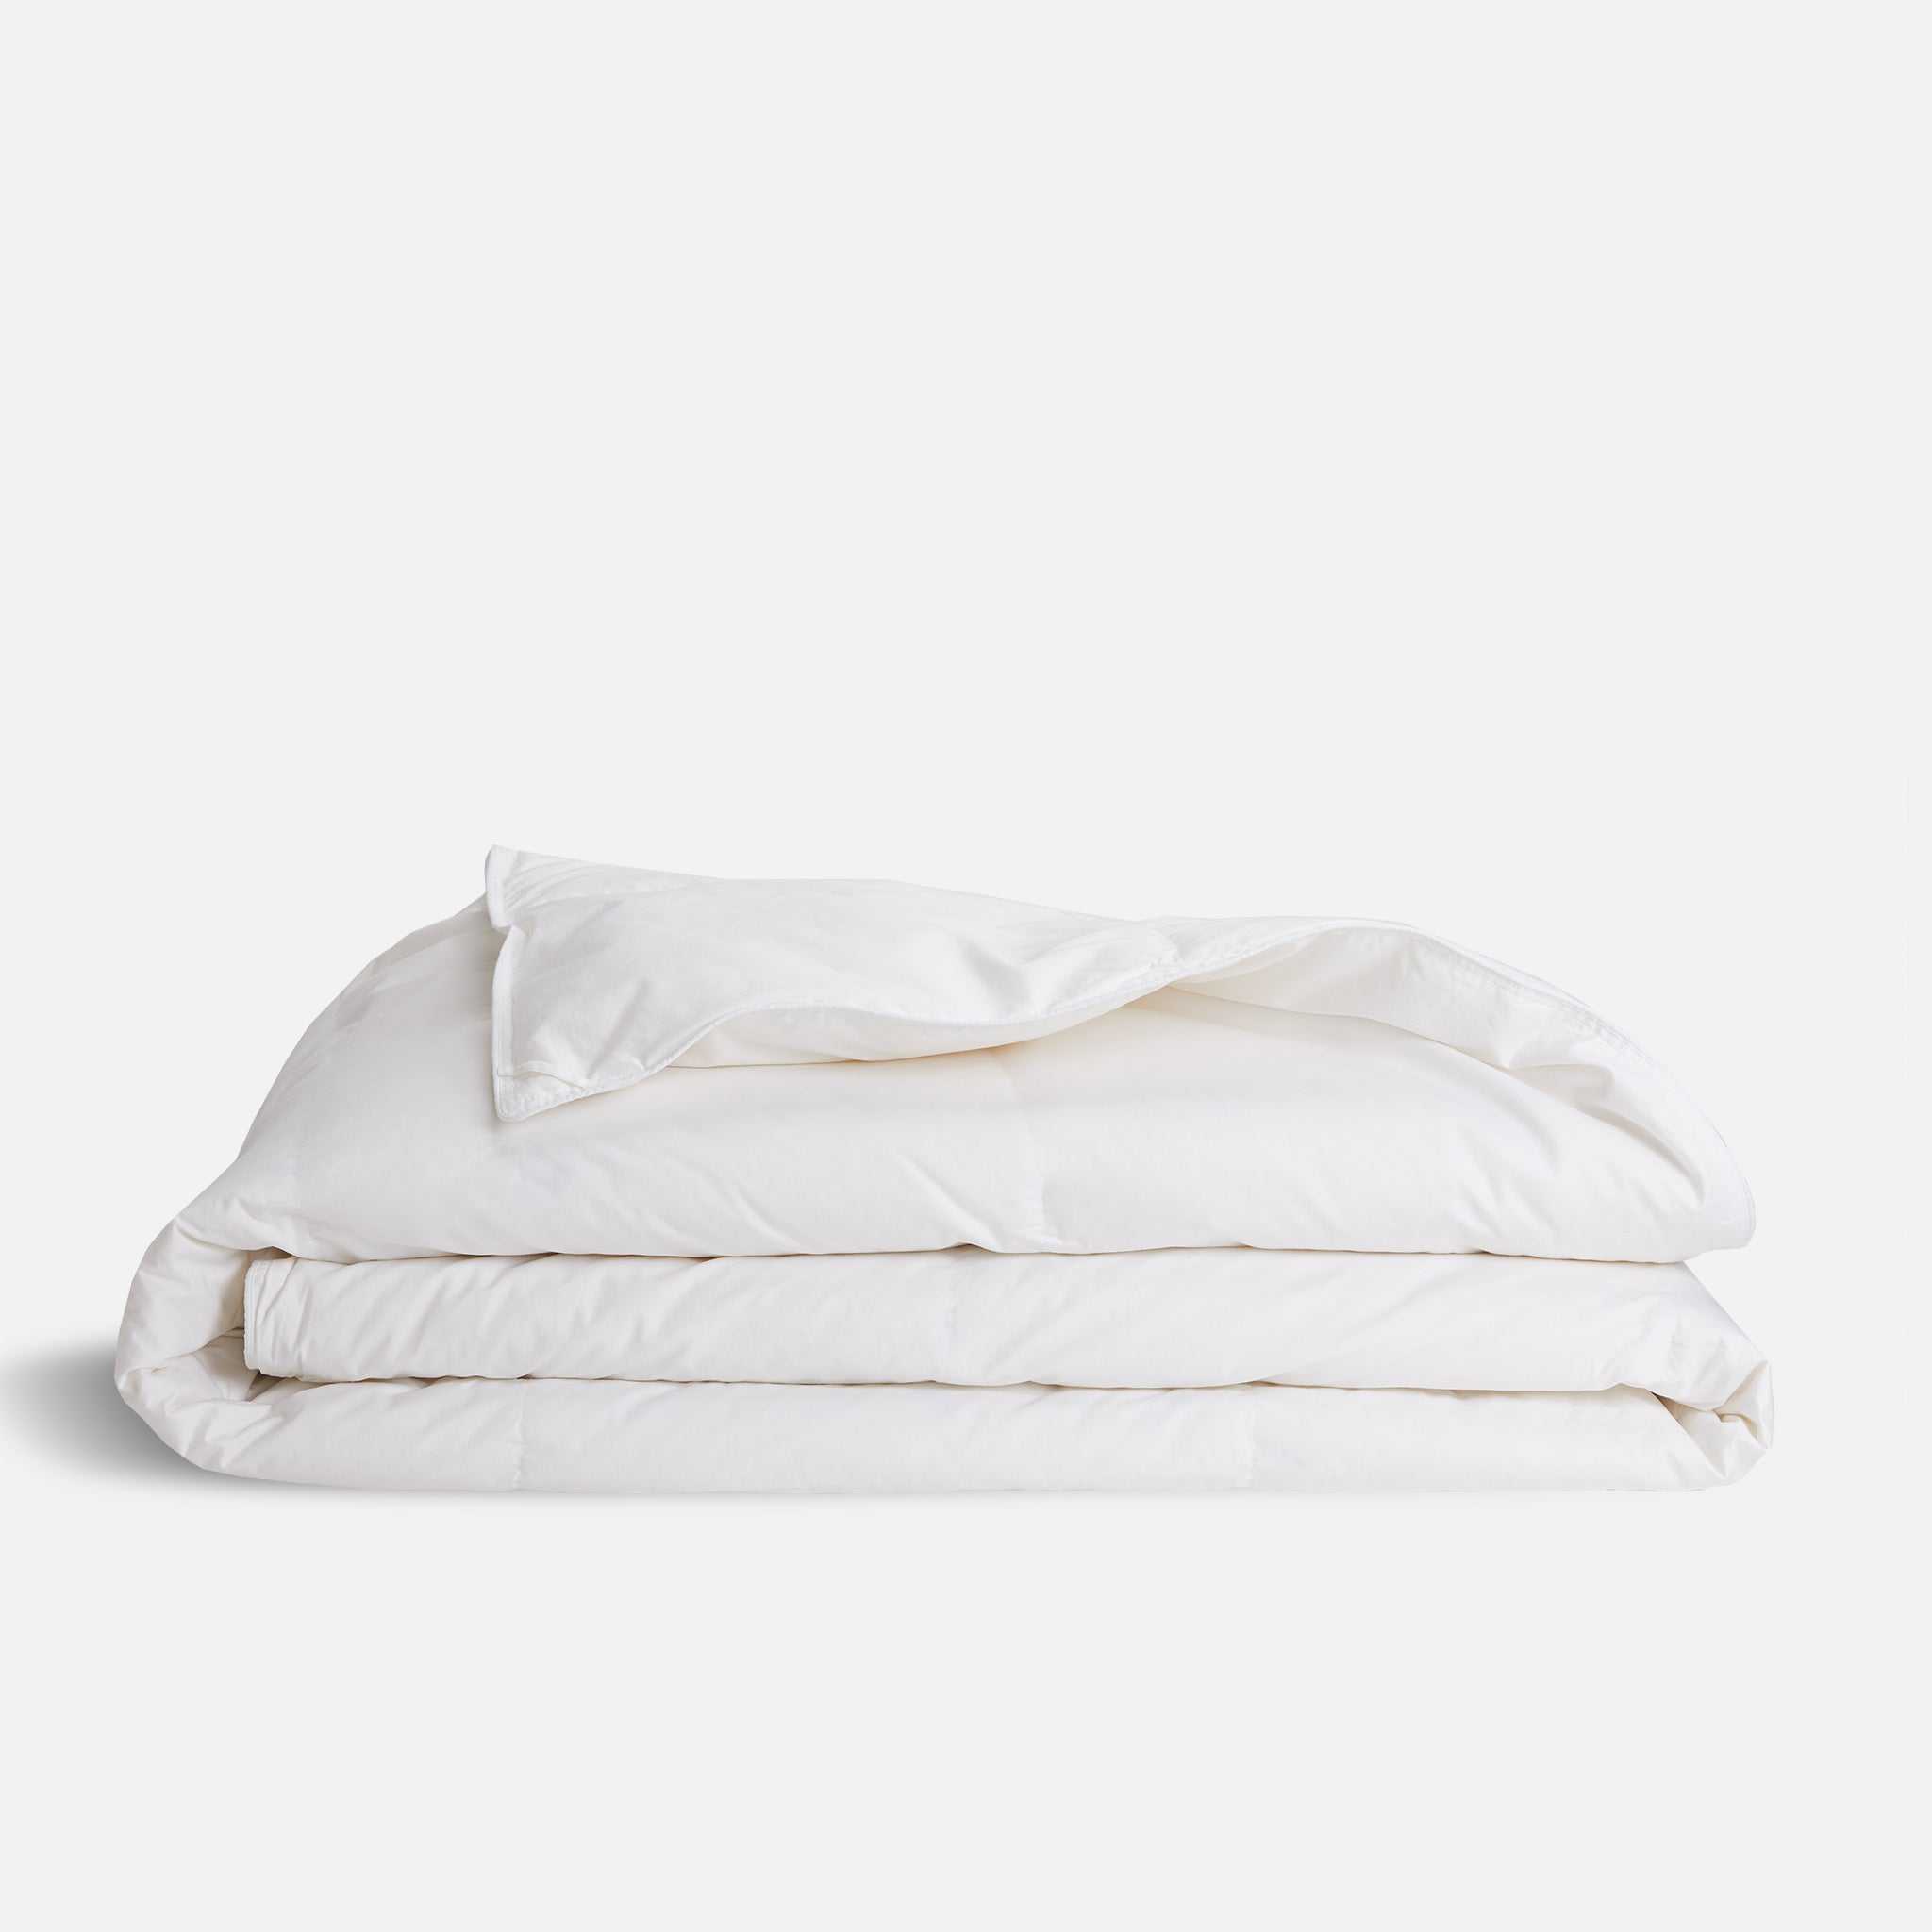 Brooklinen Down Comforter size Full/Queen